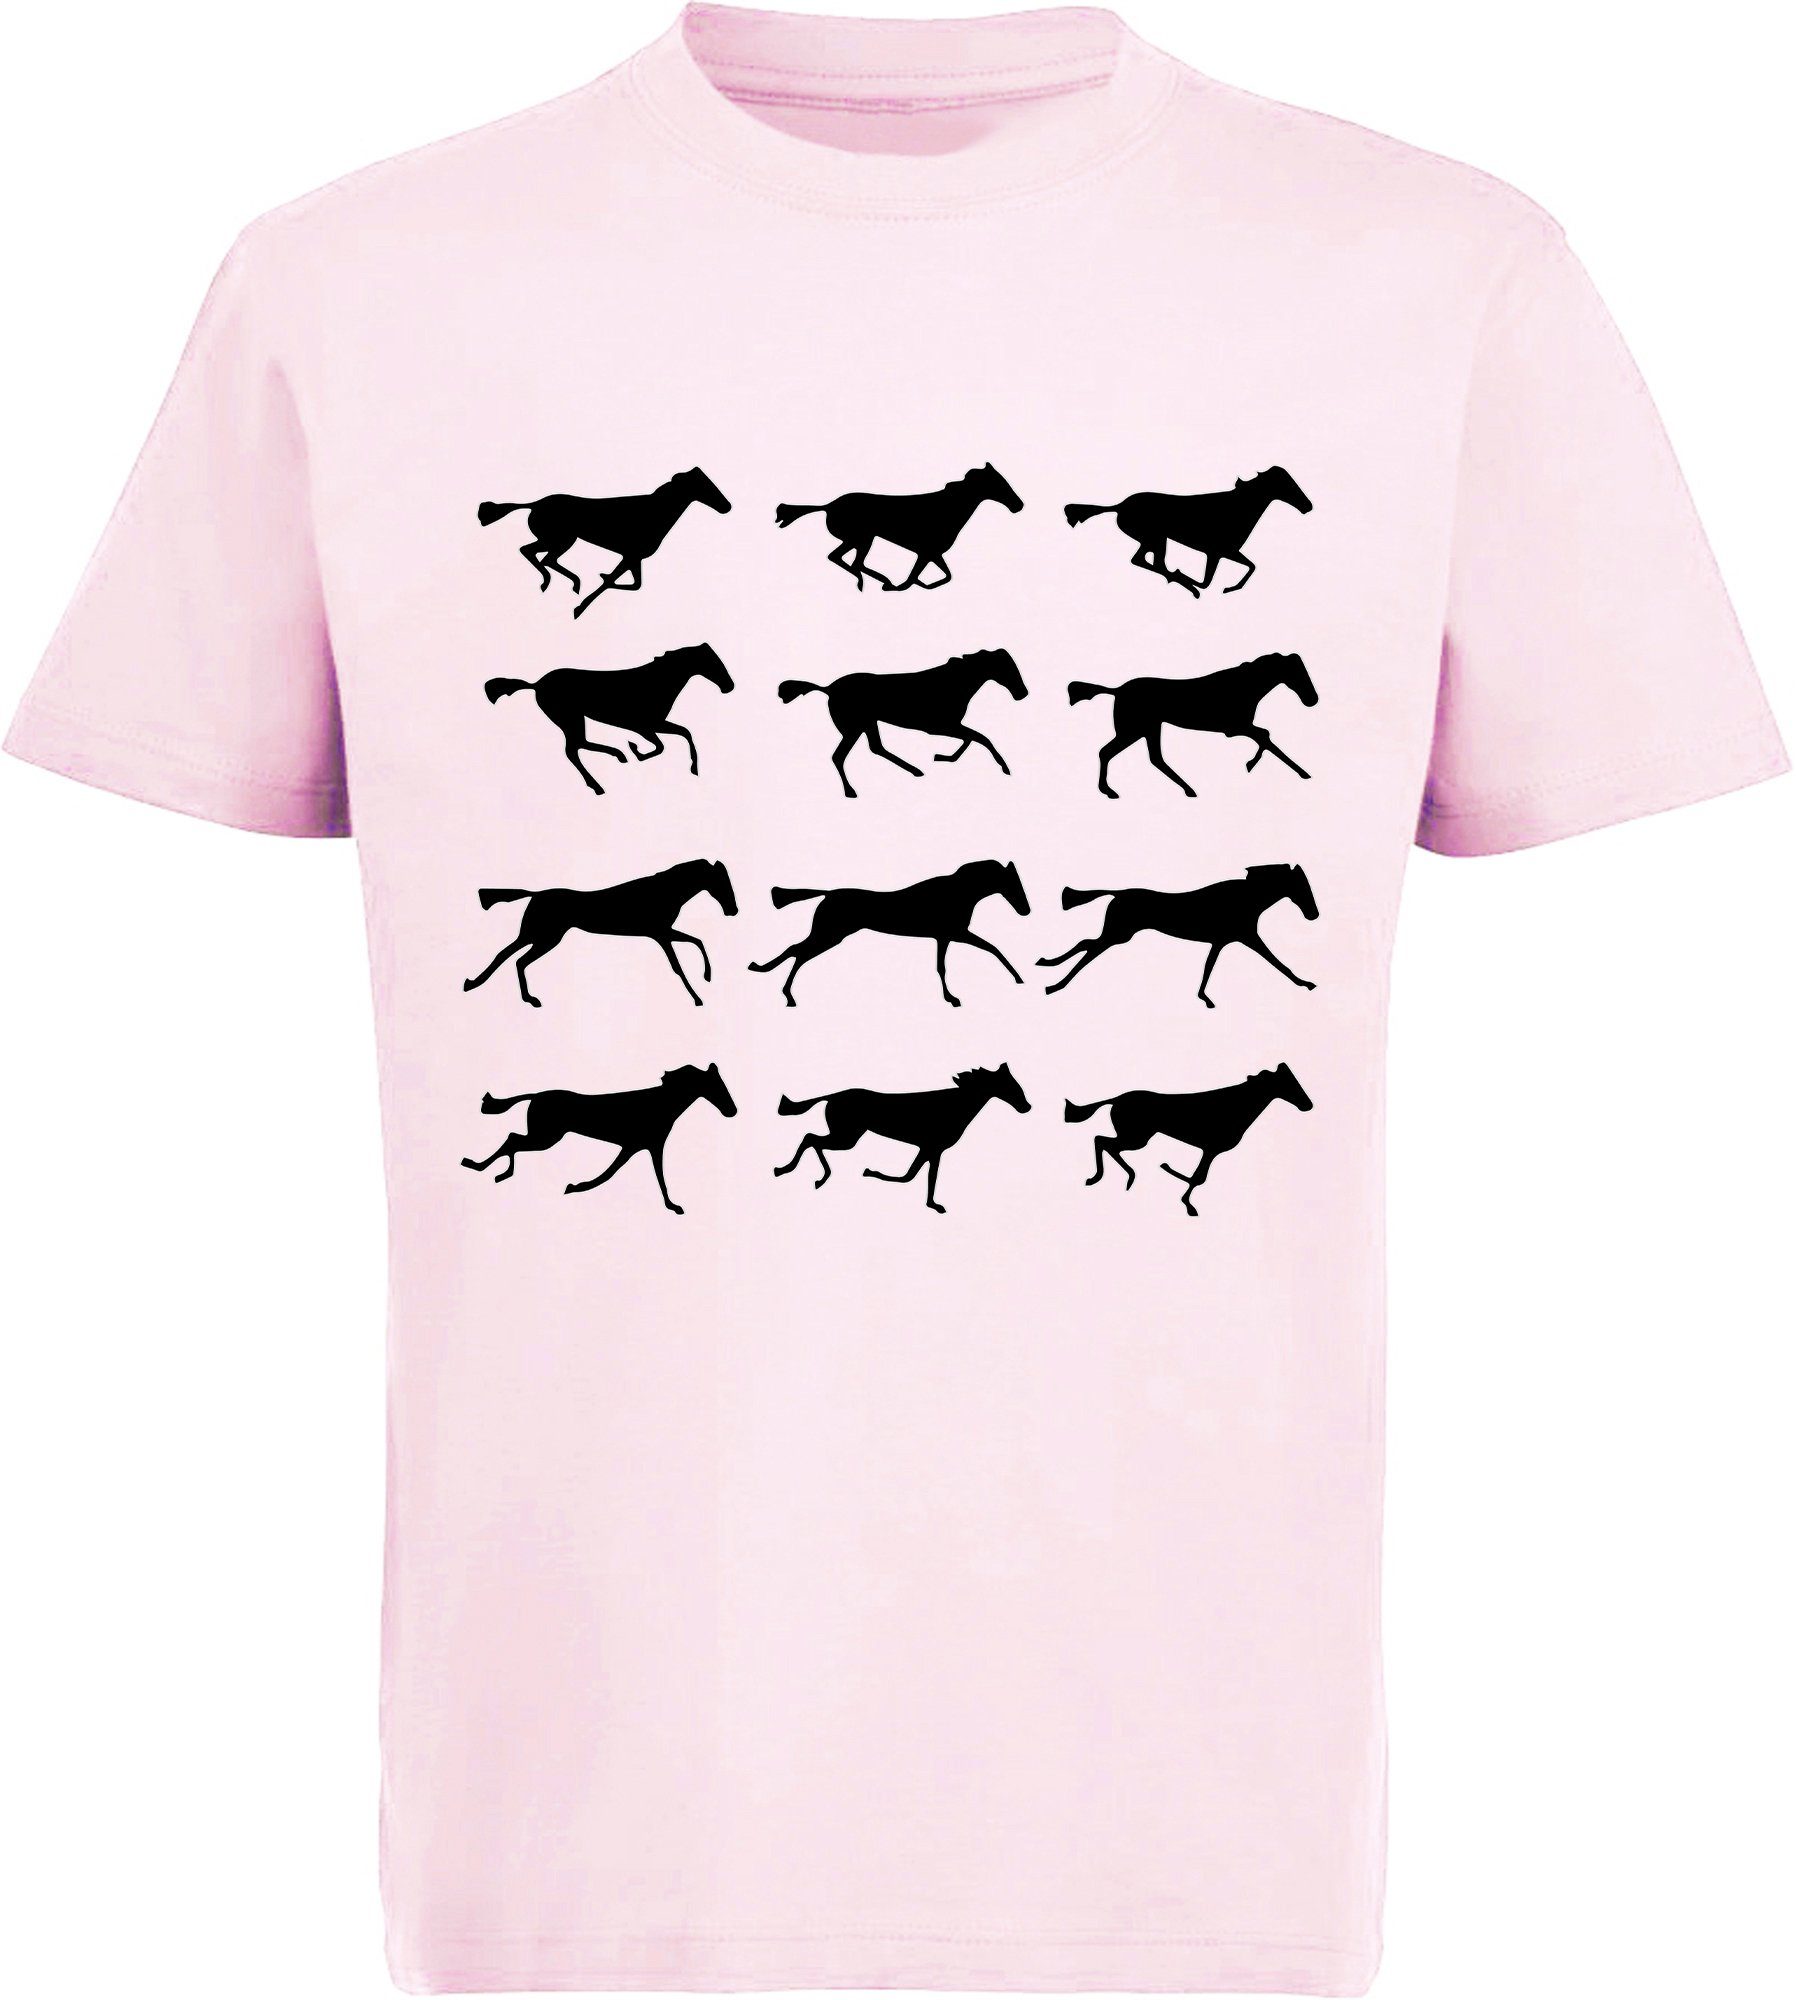 MyDesign24 Print-Shirt i173 mit Mädchen rosa Baumwollshirt von - Pferden Aufdruck, T-Shirt Silhouetten bedrucktes